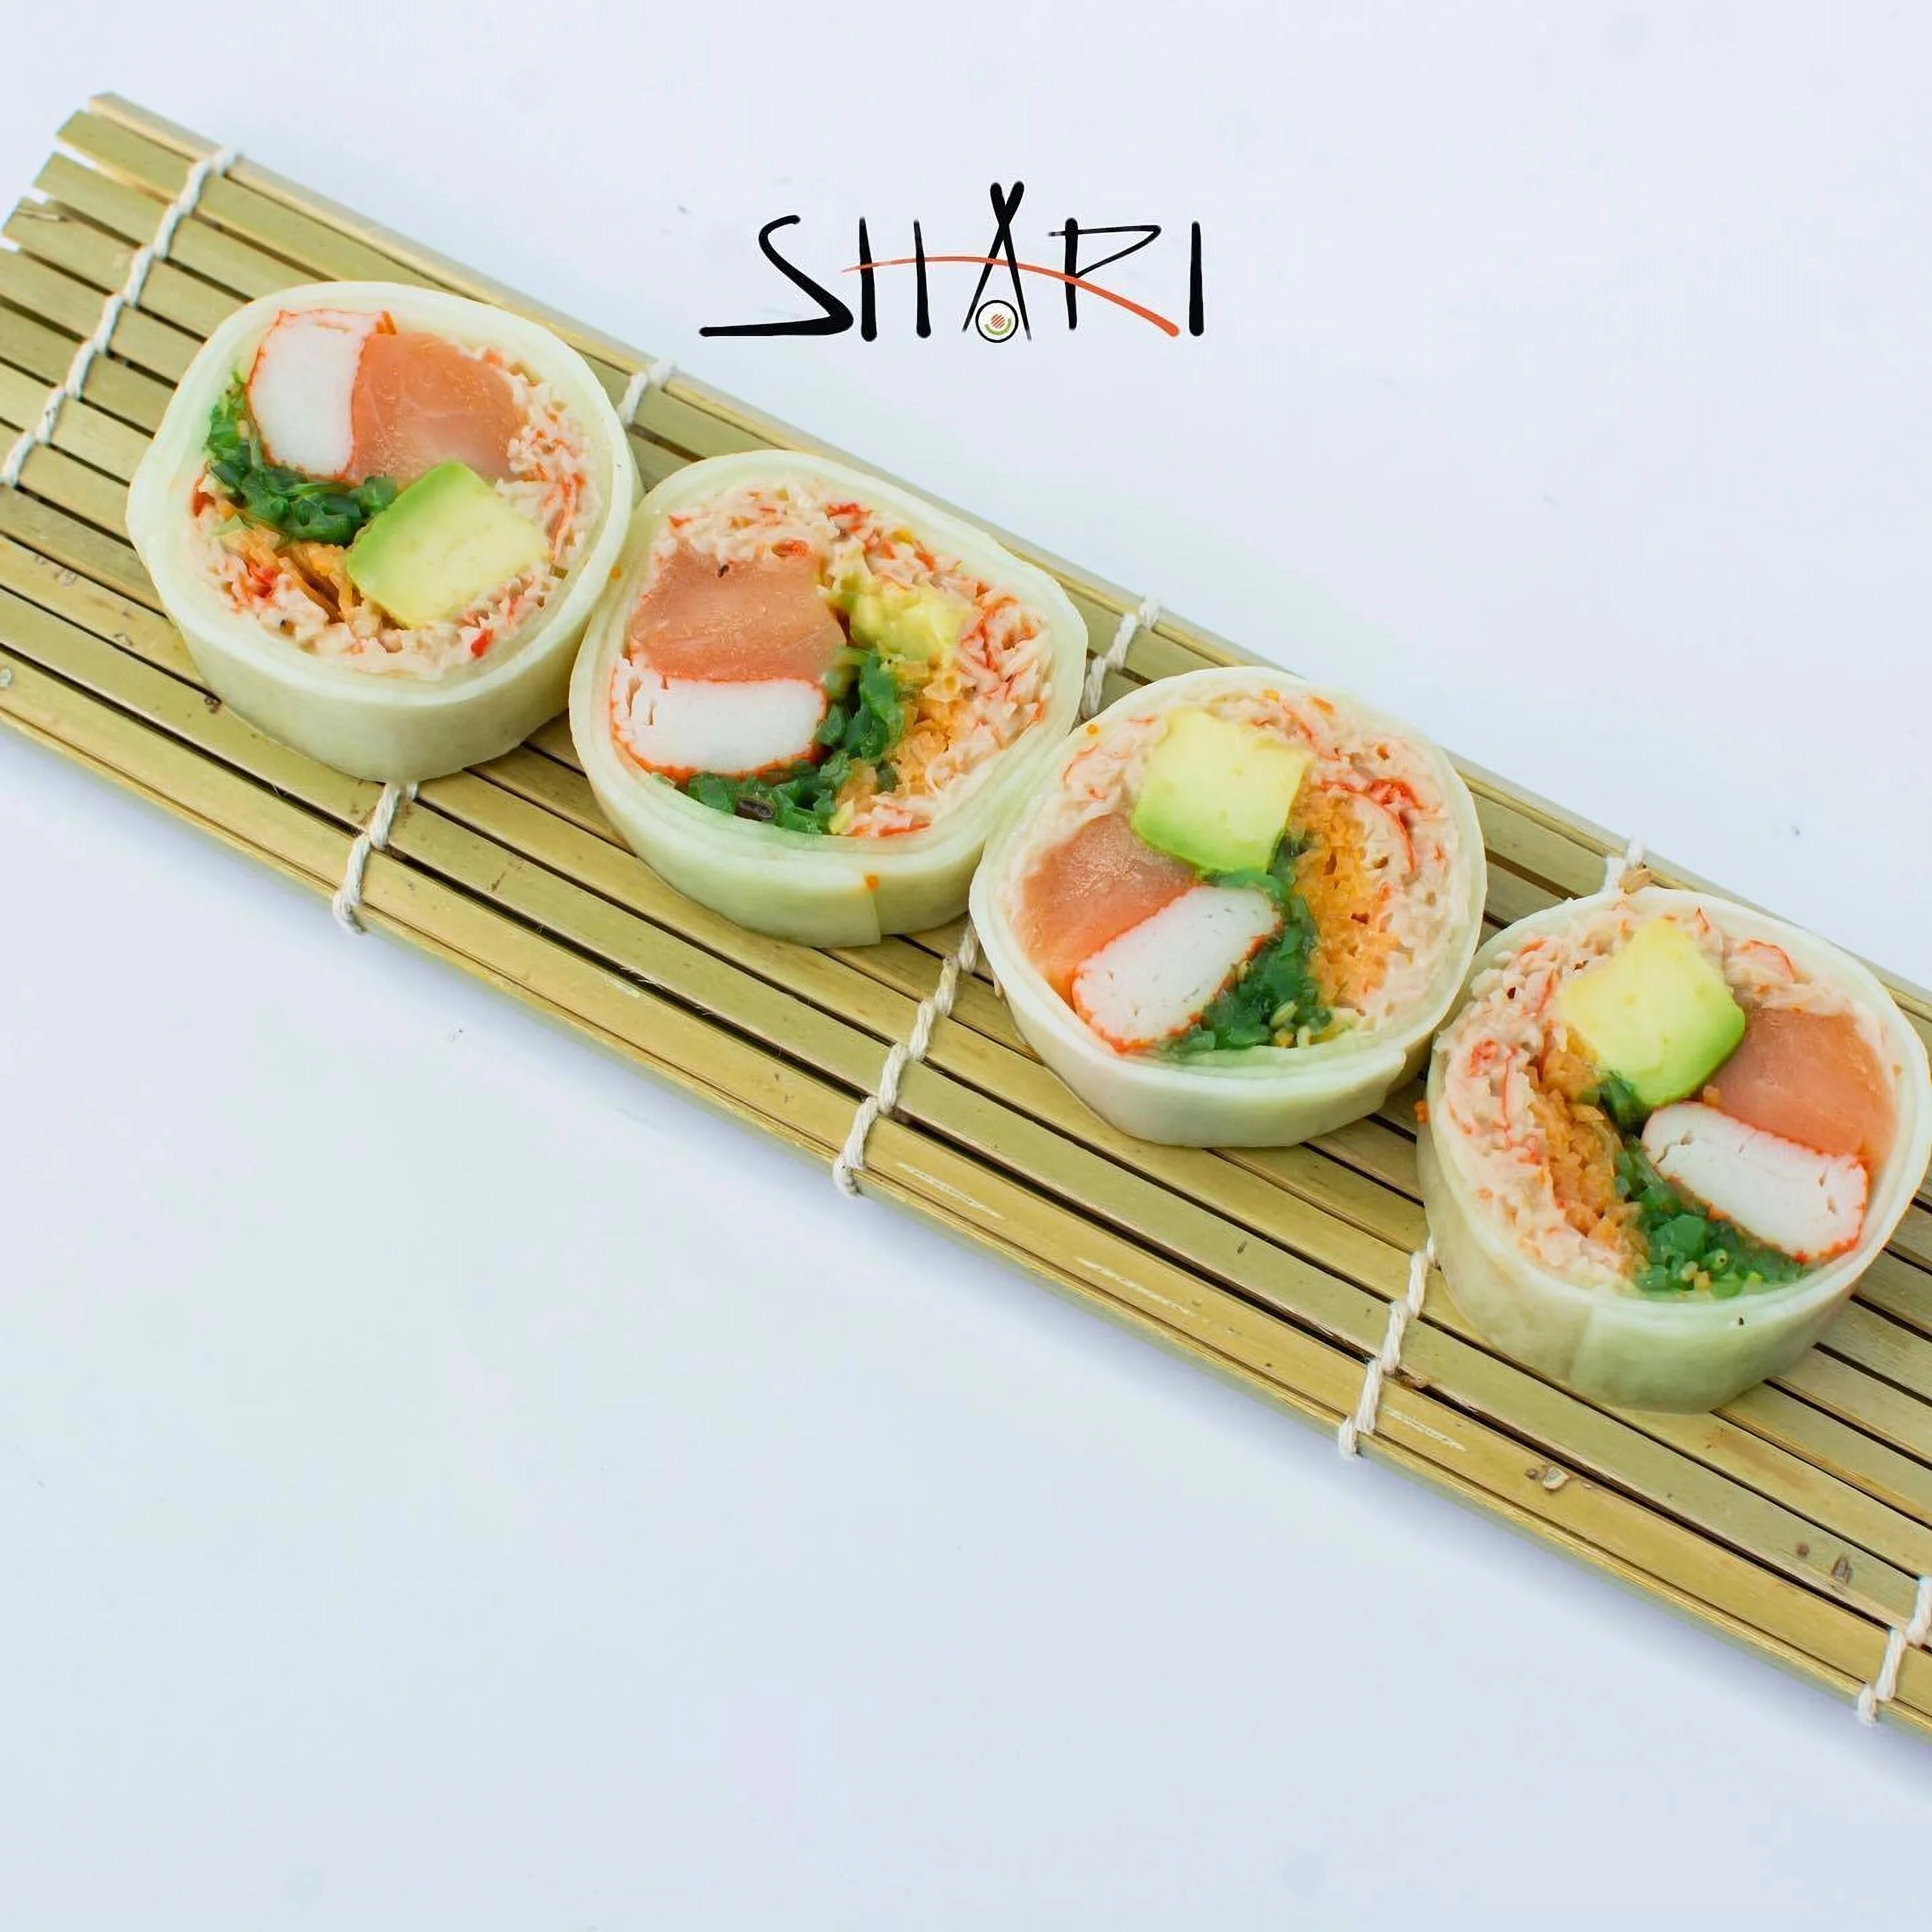 Restaurantes-shari-sushi-bar-20125